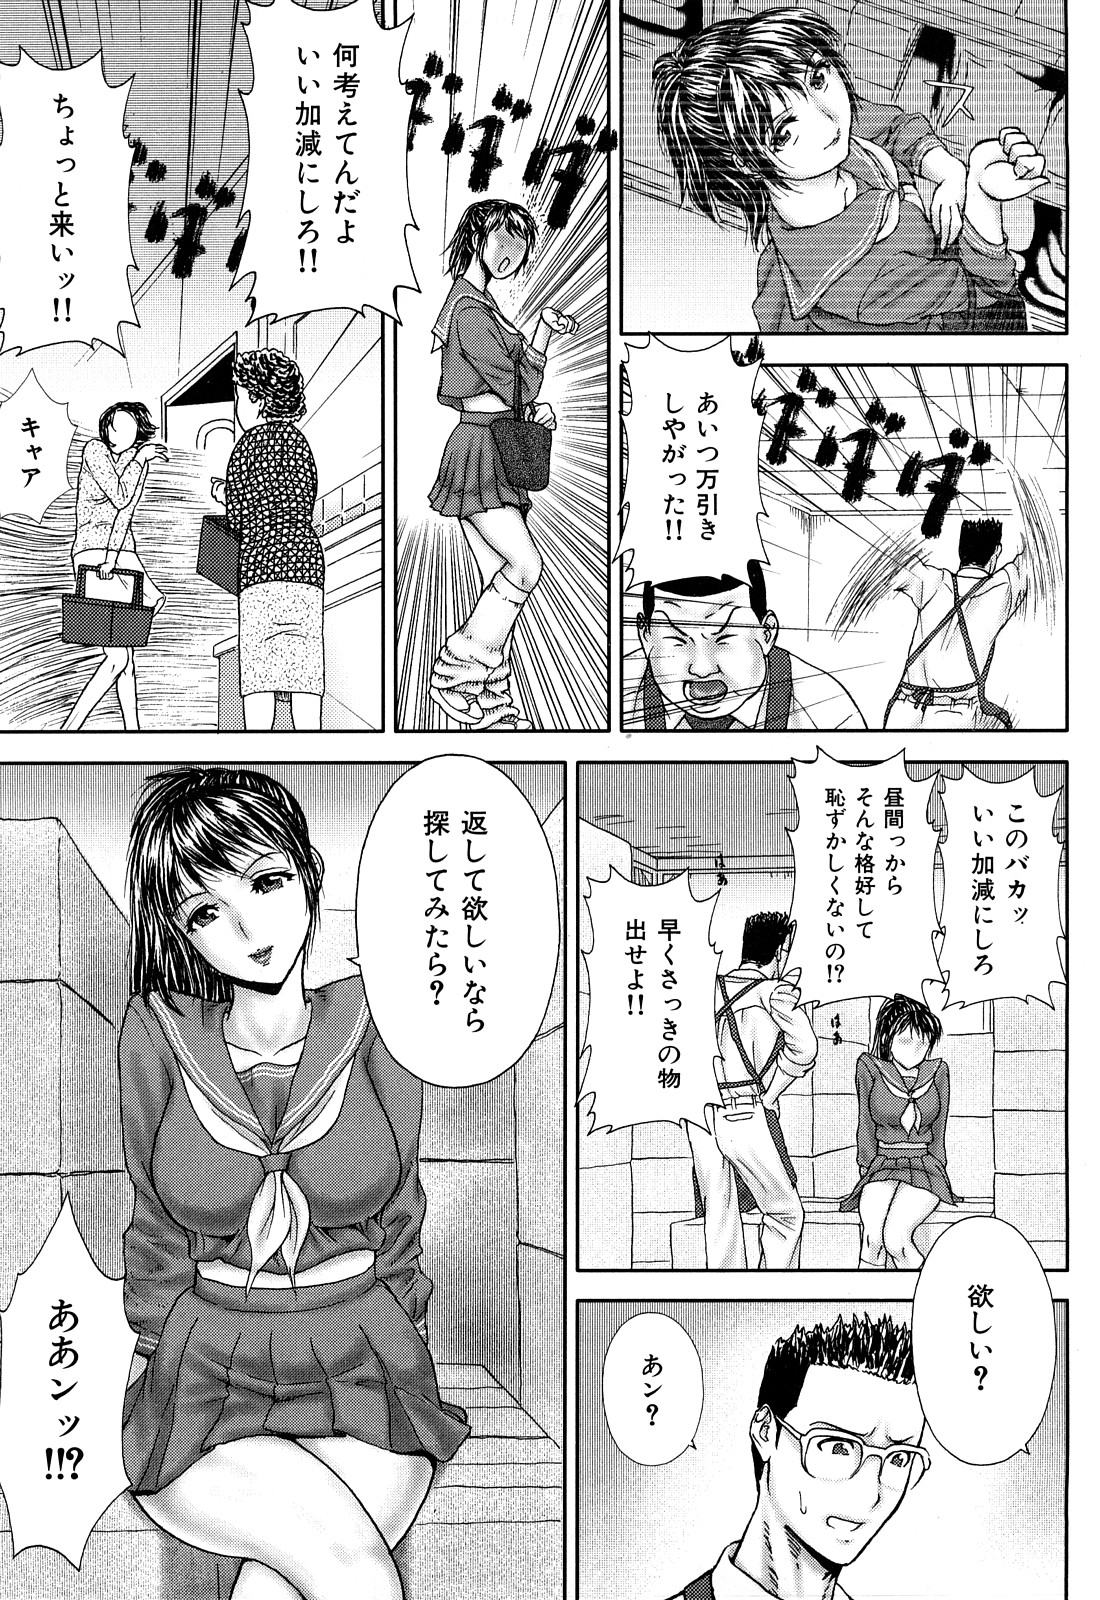 [EXTREME] Tsuma No Shizuku ~Nikuyome Miyuki 29 sai~ page 13 full